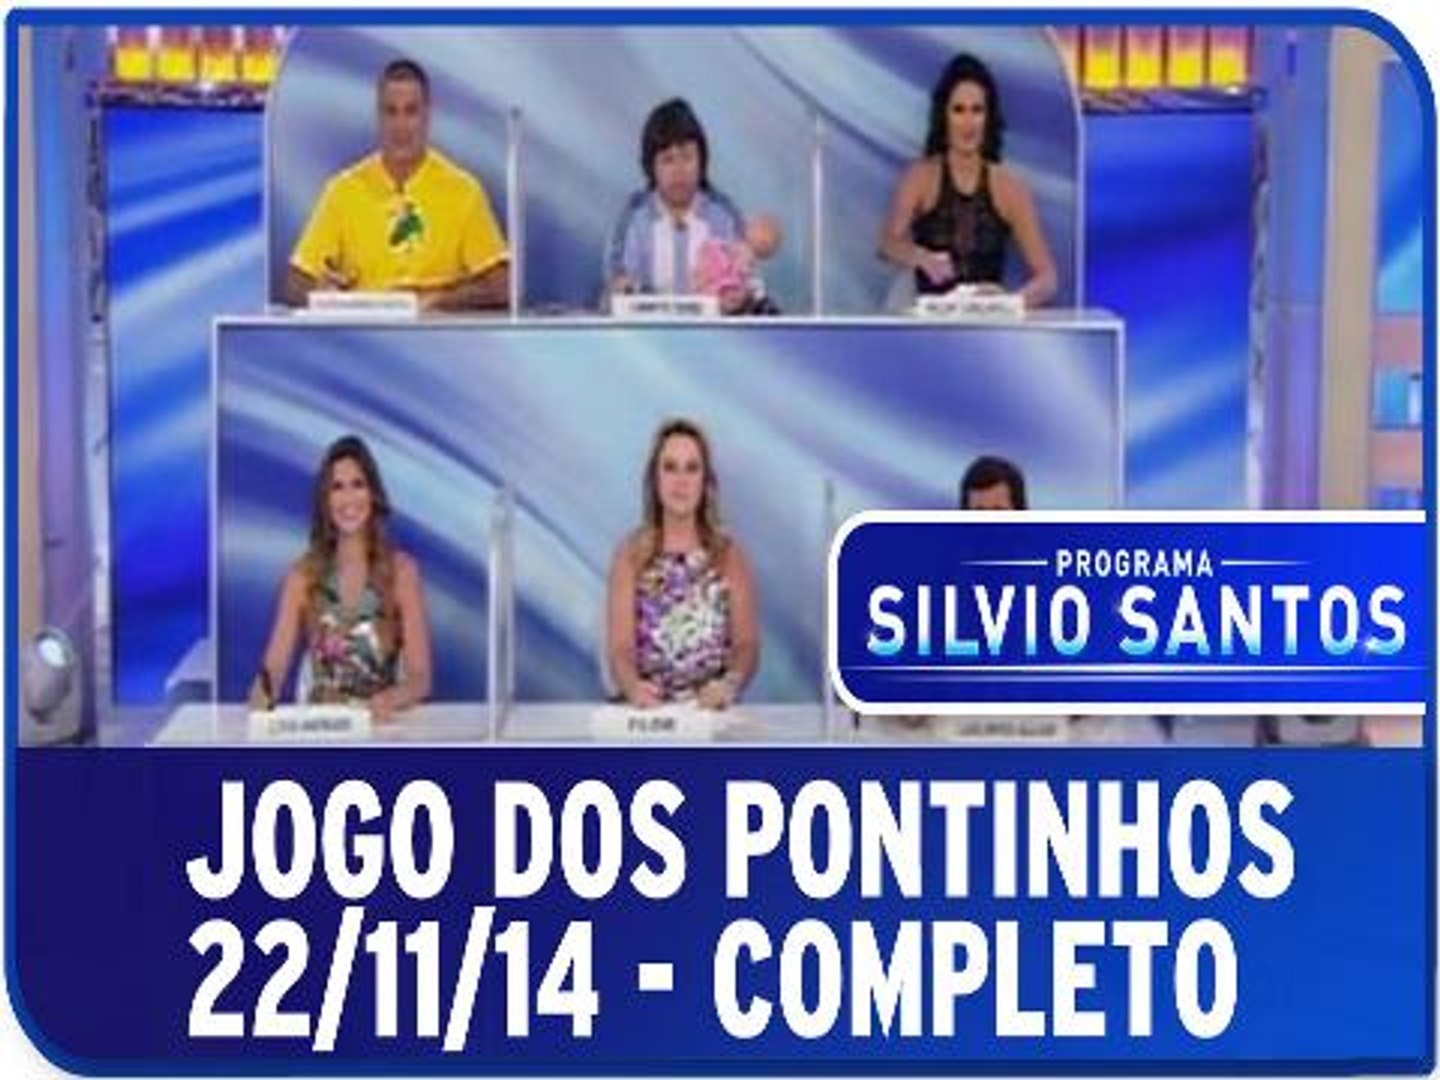 Programa Silvio Santos - O Jogo dos Pontinhos deste último